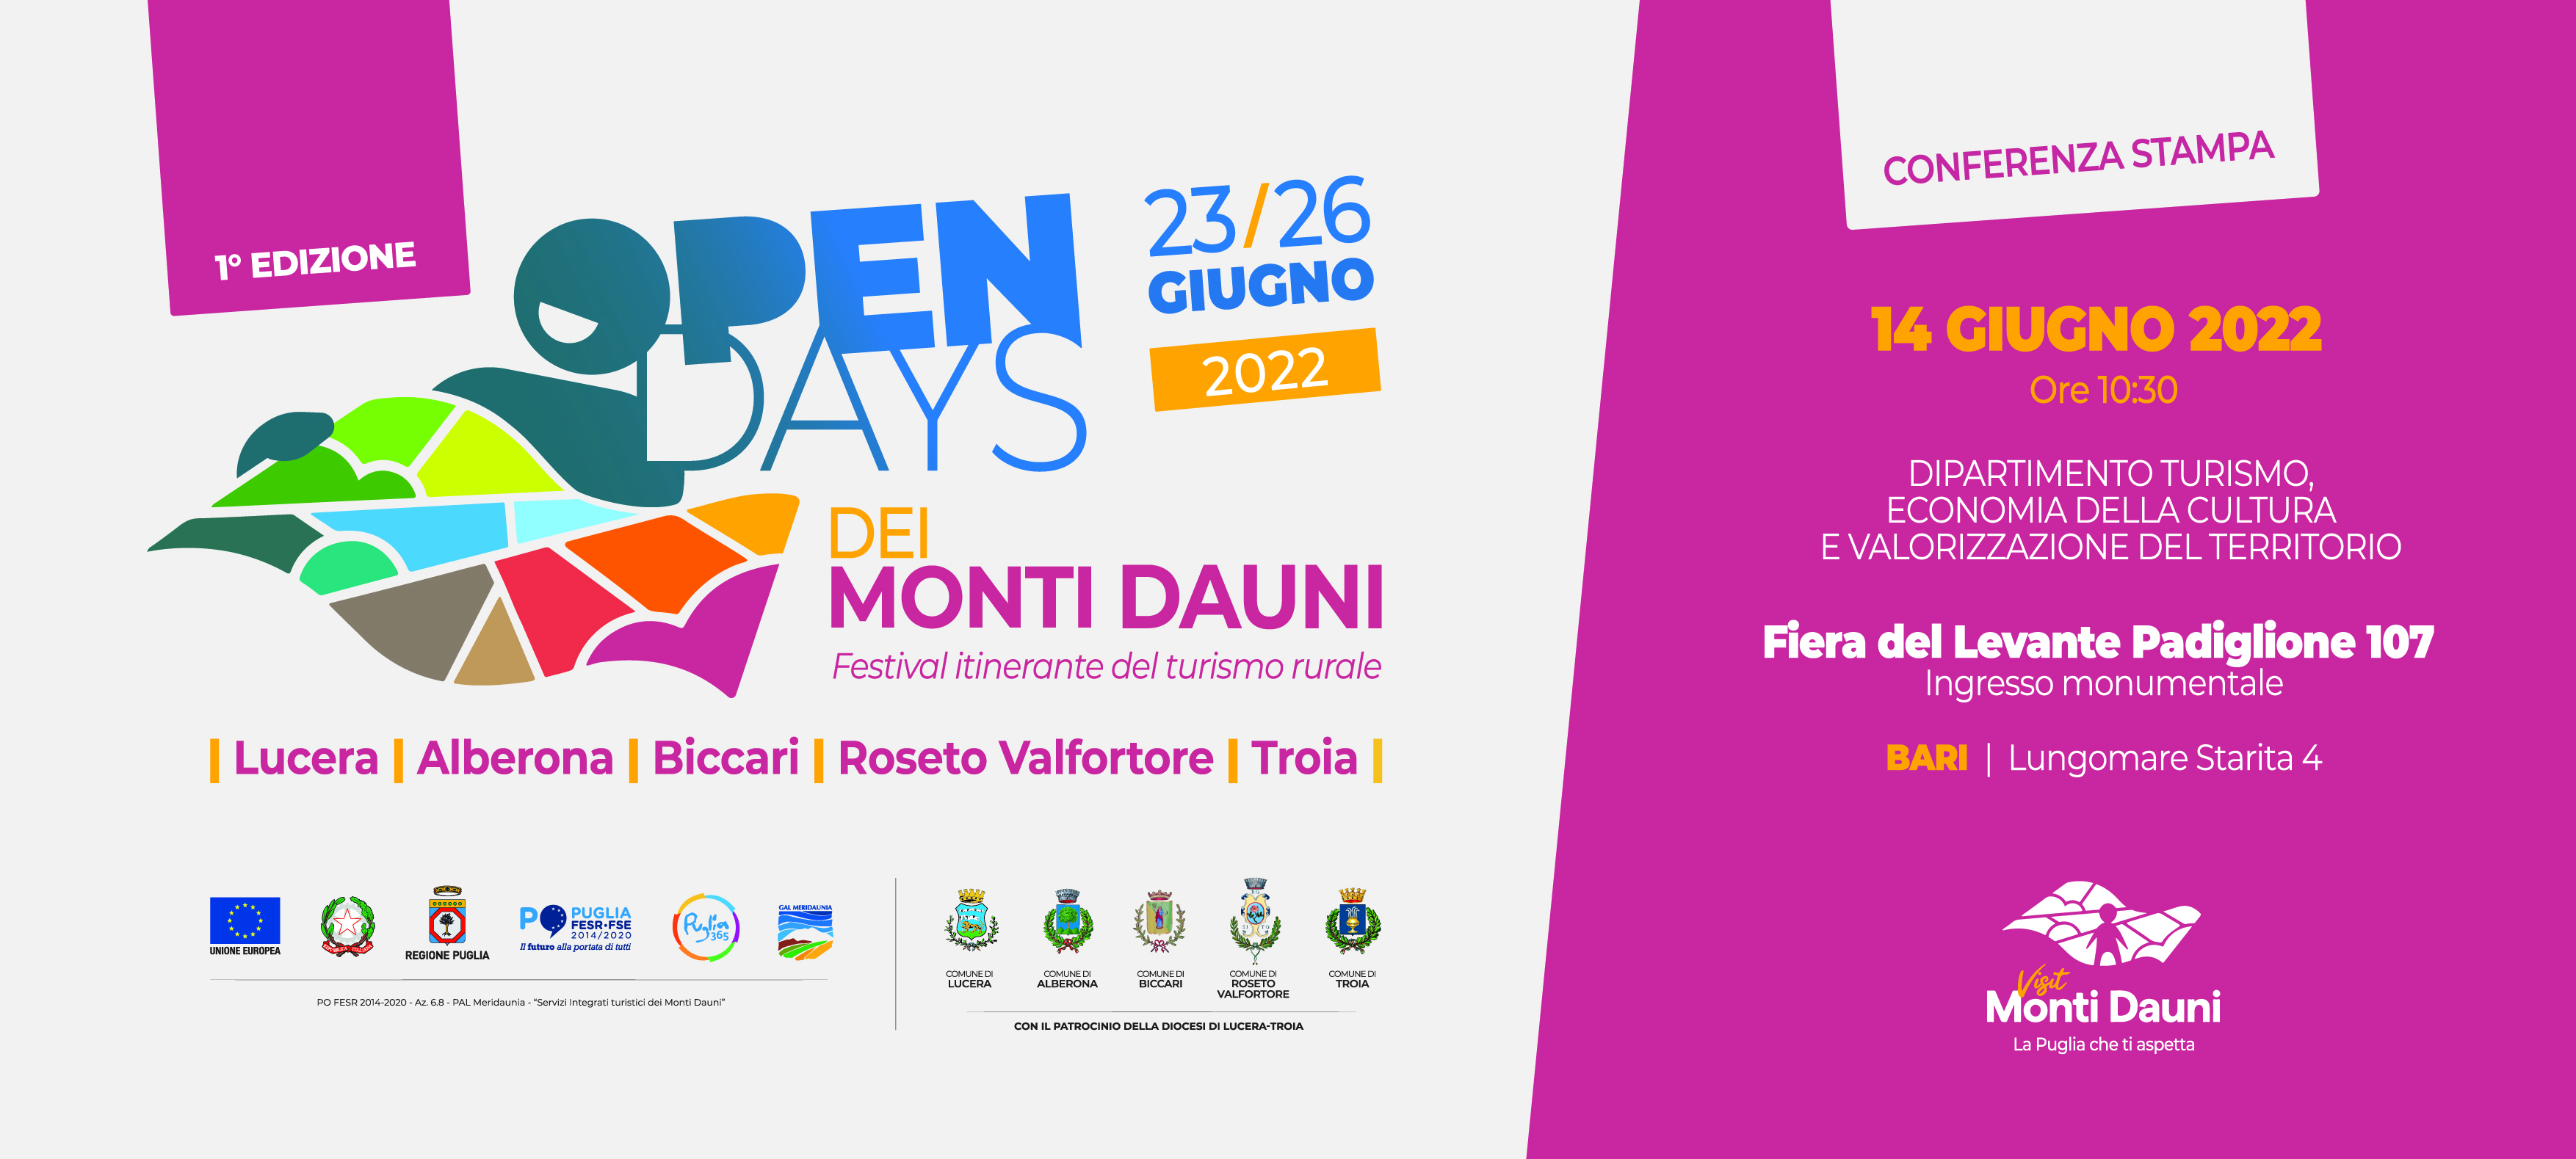 Open Days dei Monti Dauni, il 14 giugno a Bari conferenza stampa